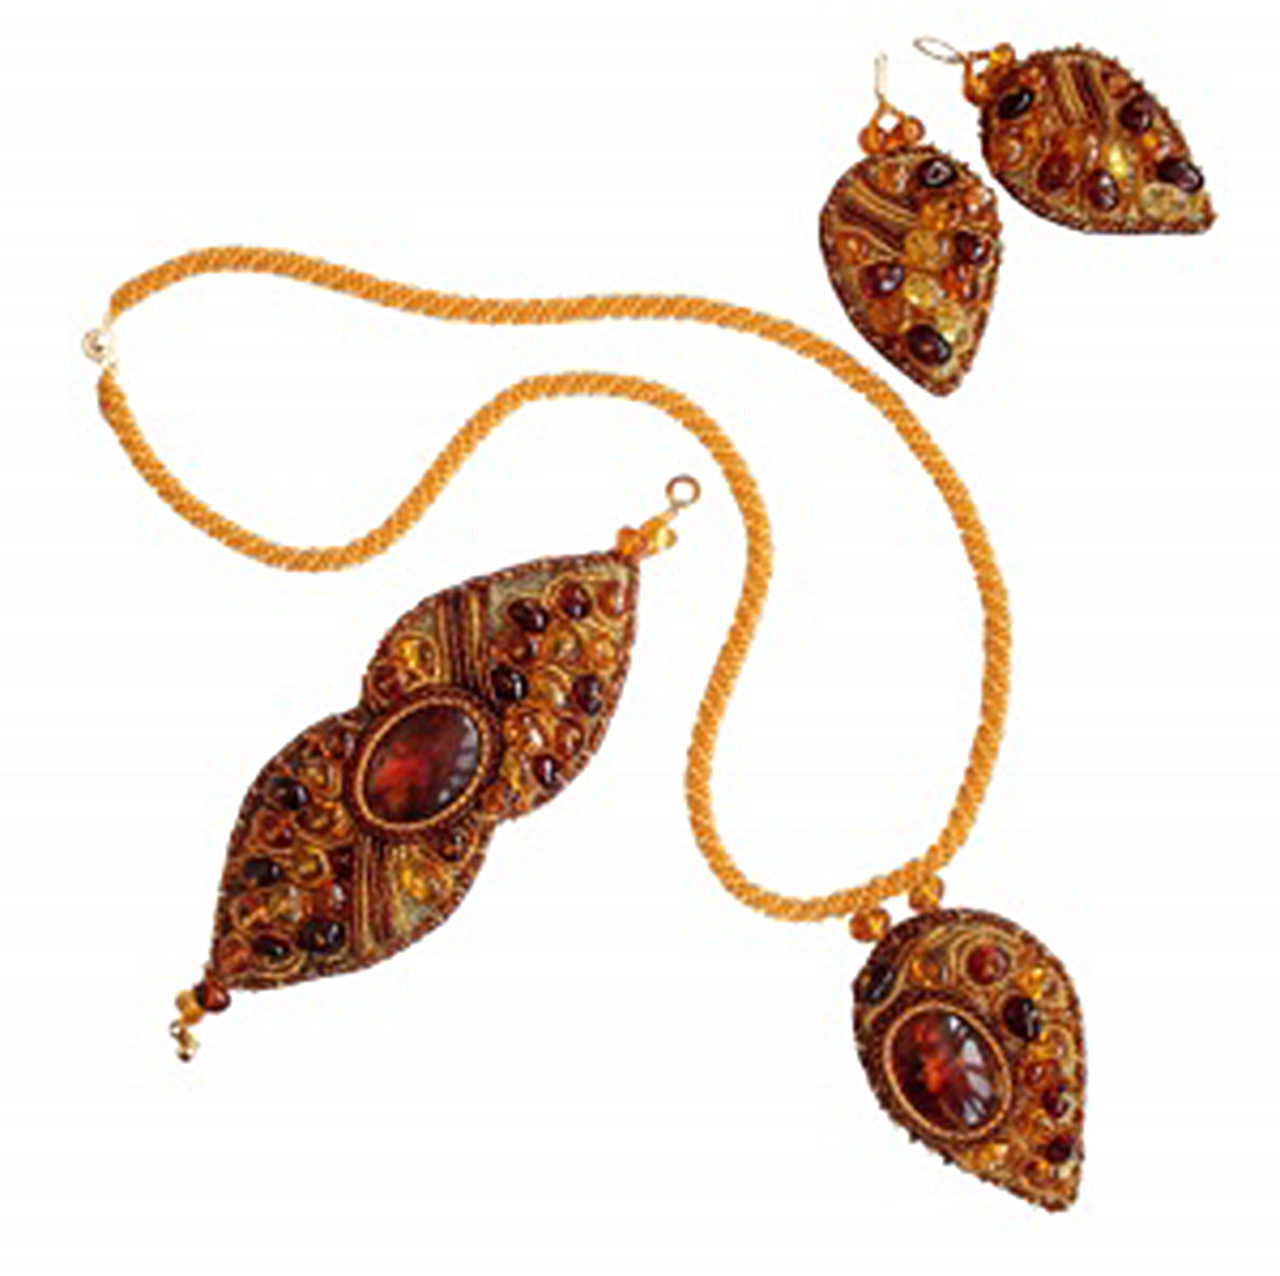 Необычный комплект из балтийского янтаря, бисера и натуральной кожи: кулон, браслет, серьги